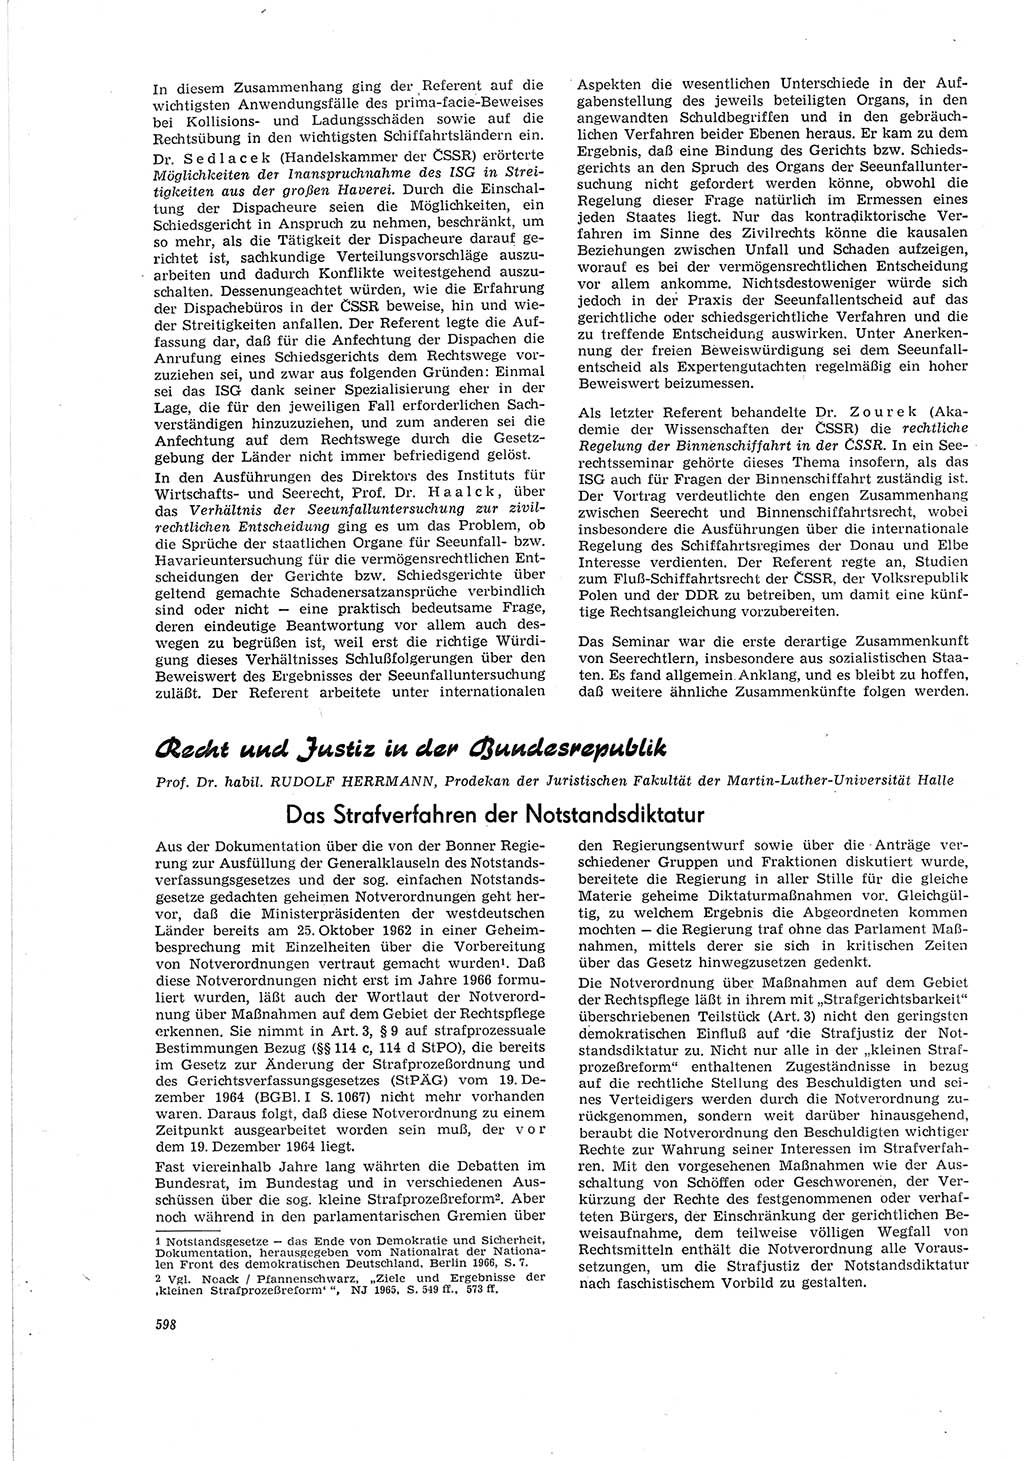 Neue Justiz (NJ), Zeitschrift für Recht und Rechtswissenschaft [Deutsche Demokratische Republik (DDR)], 20. Jahrgang 1966, Seite 598 (NJ DDR 1966, S. 598)